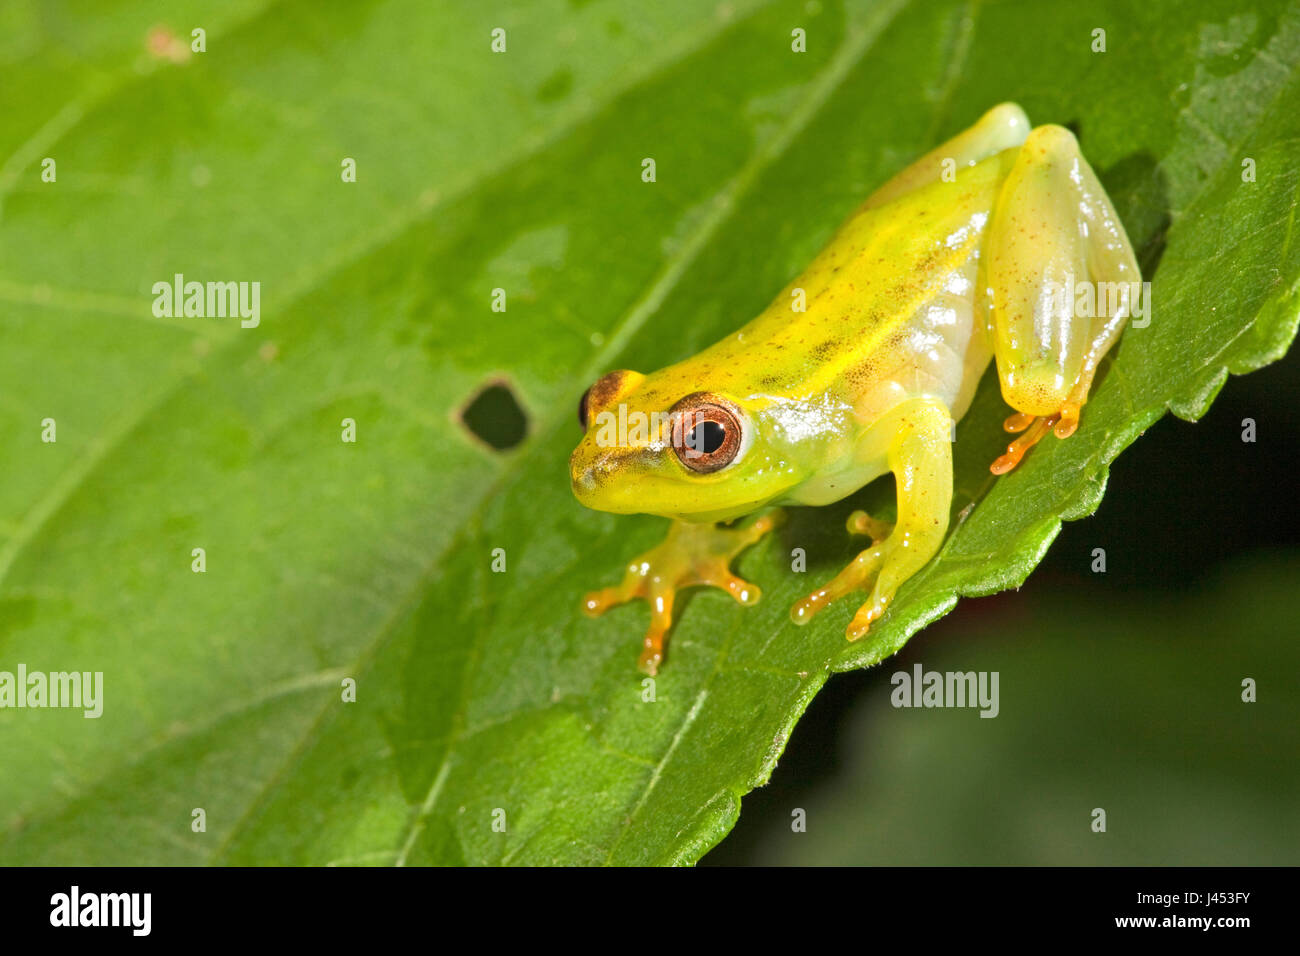 Foto von einem Argus Reed Frosch auf einem grünen Blatt Stockfoto